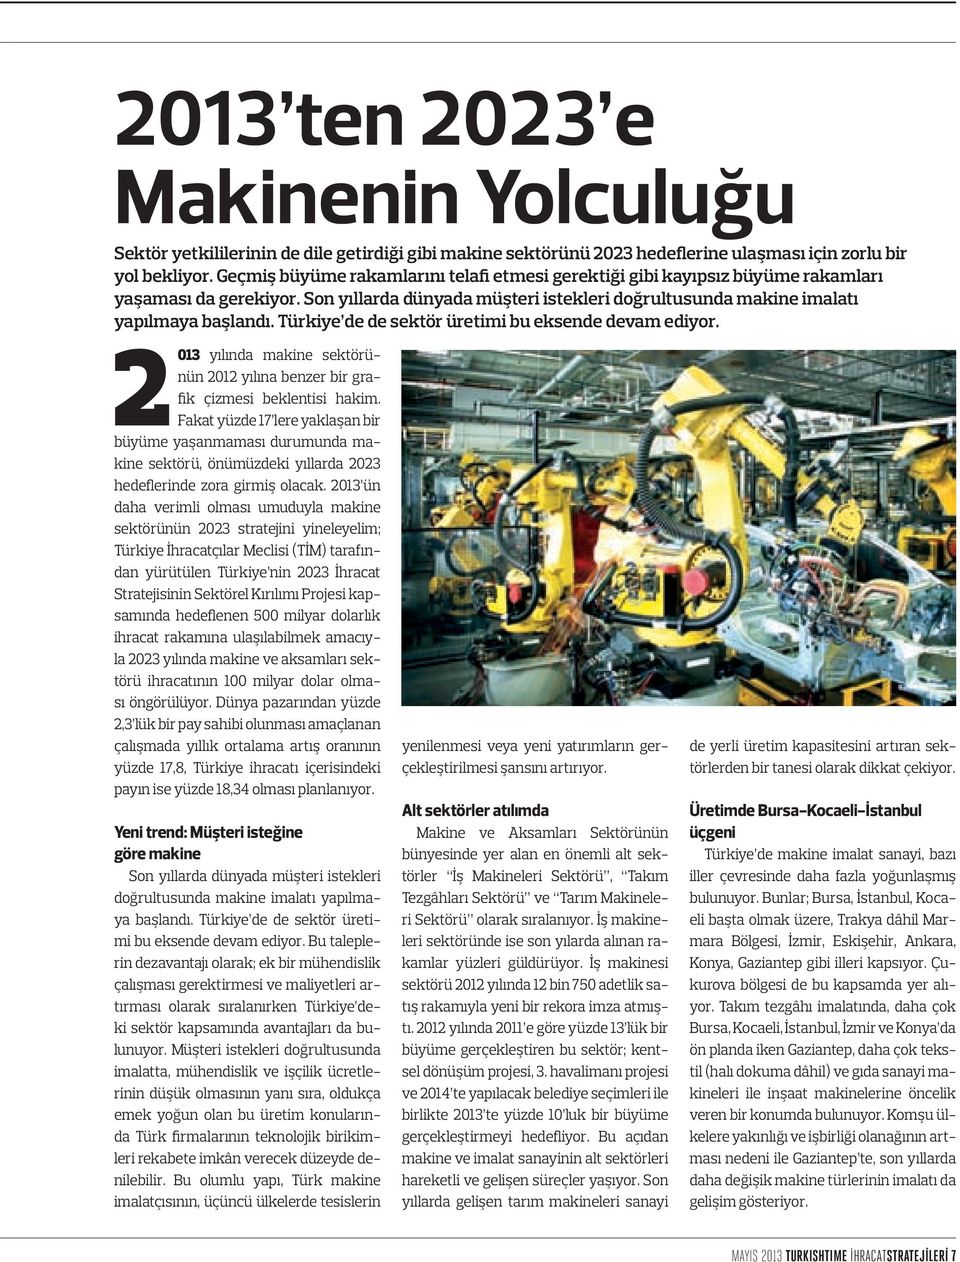 Türkiye de de sektör üretimi bu eksende devam ediyor. 2013 yılında makine sektörünün 2012 yılına benzer bir grafik çizmesi beklentisi hakim.